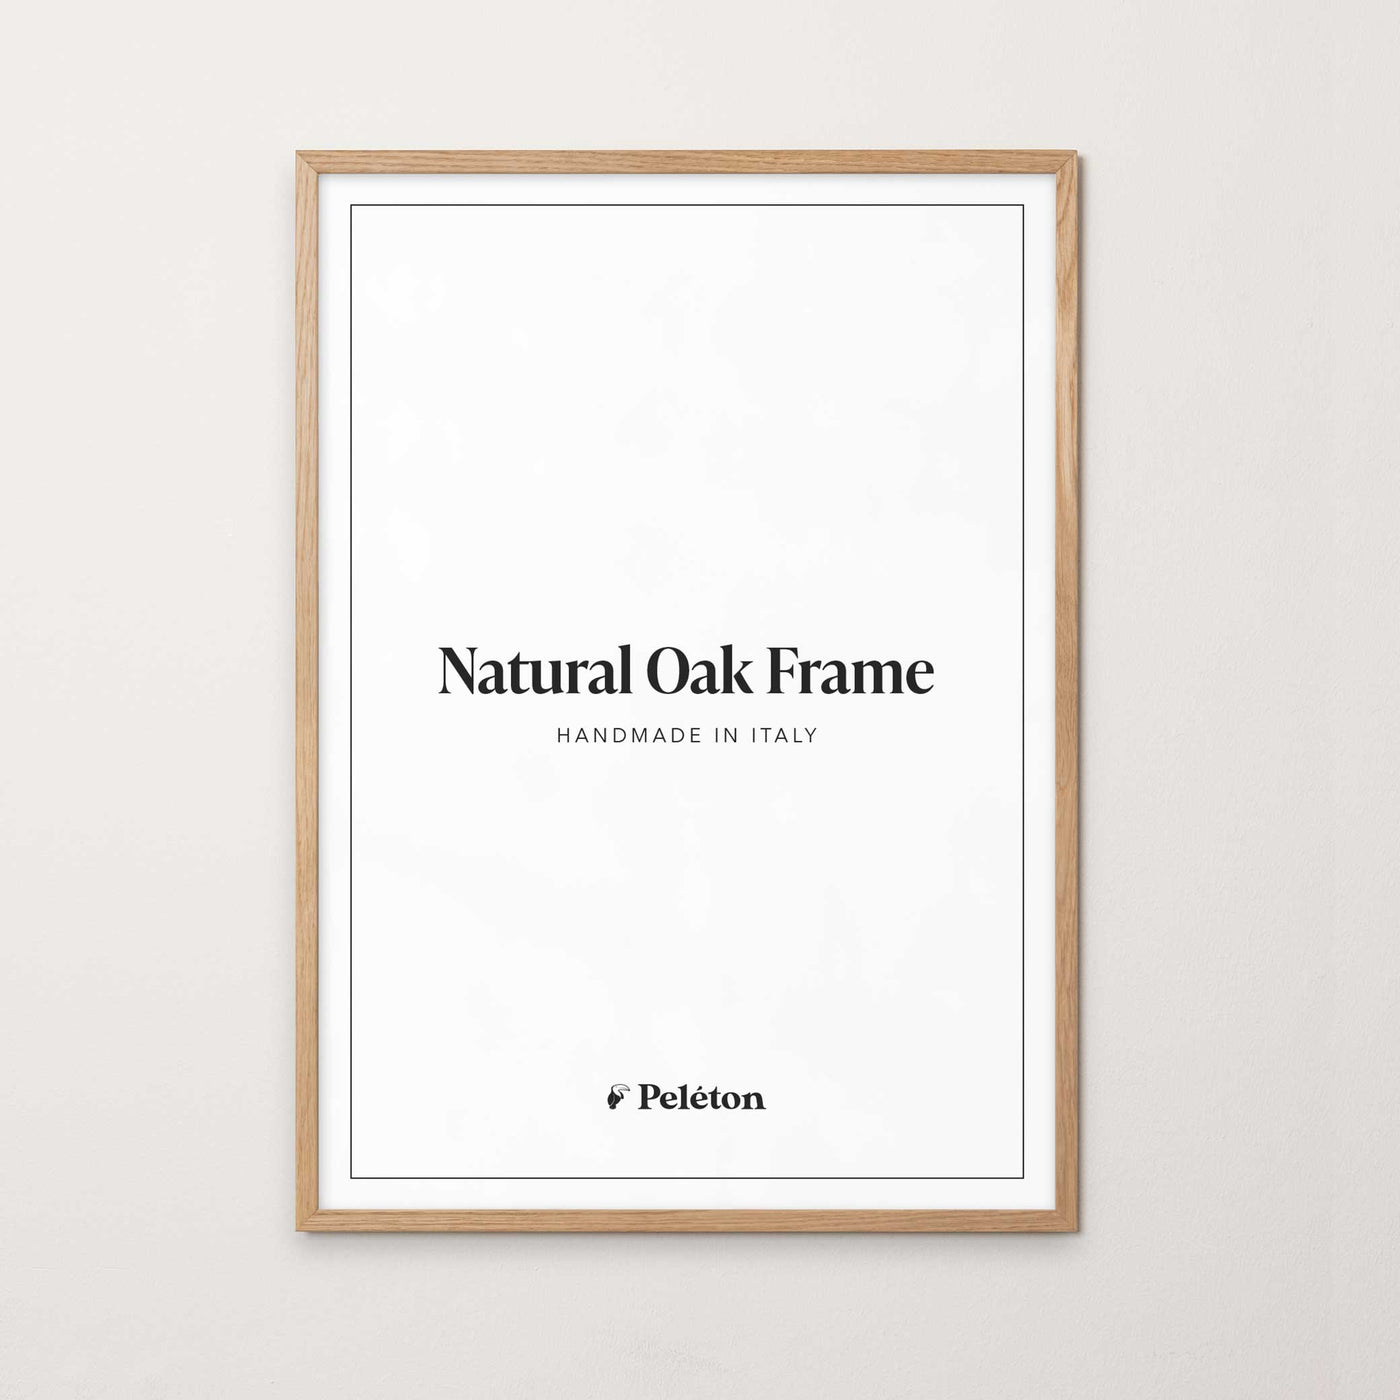 Natural oak frame